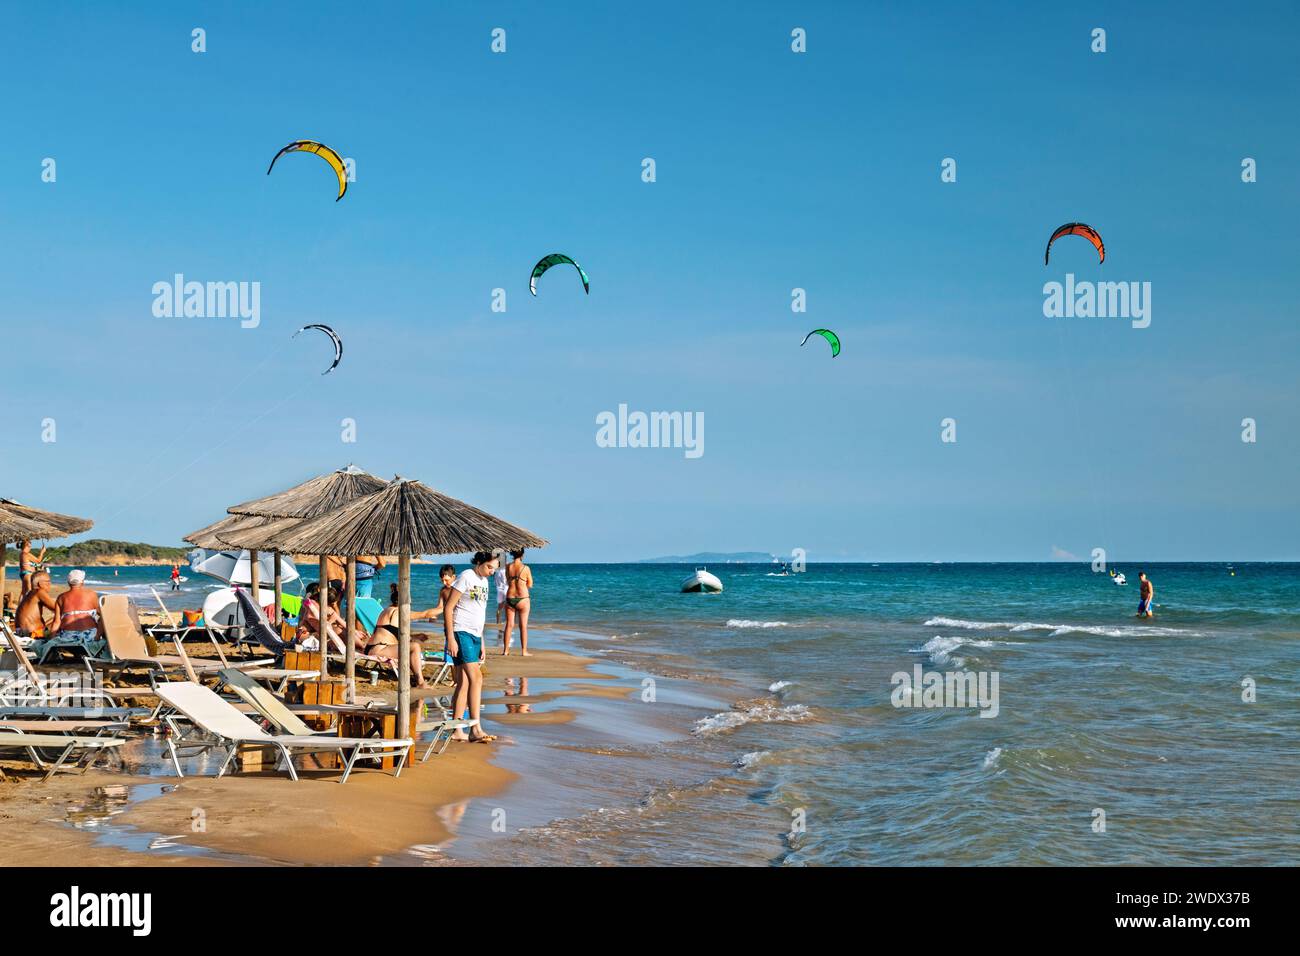 La spiaggia di Halikounas (proprio accanto al lago Korission) è un "paradiso" dei kitesurfer nell'isola di Corfù, Mar Ionio, Grecia. Foto Stock